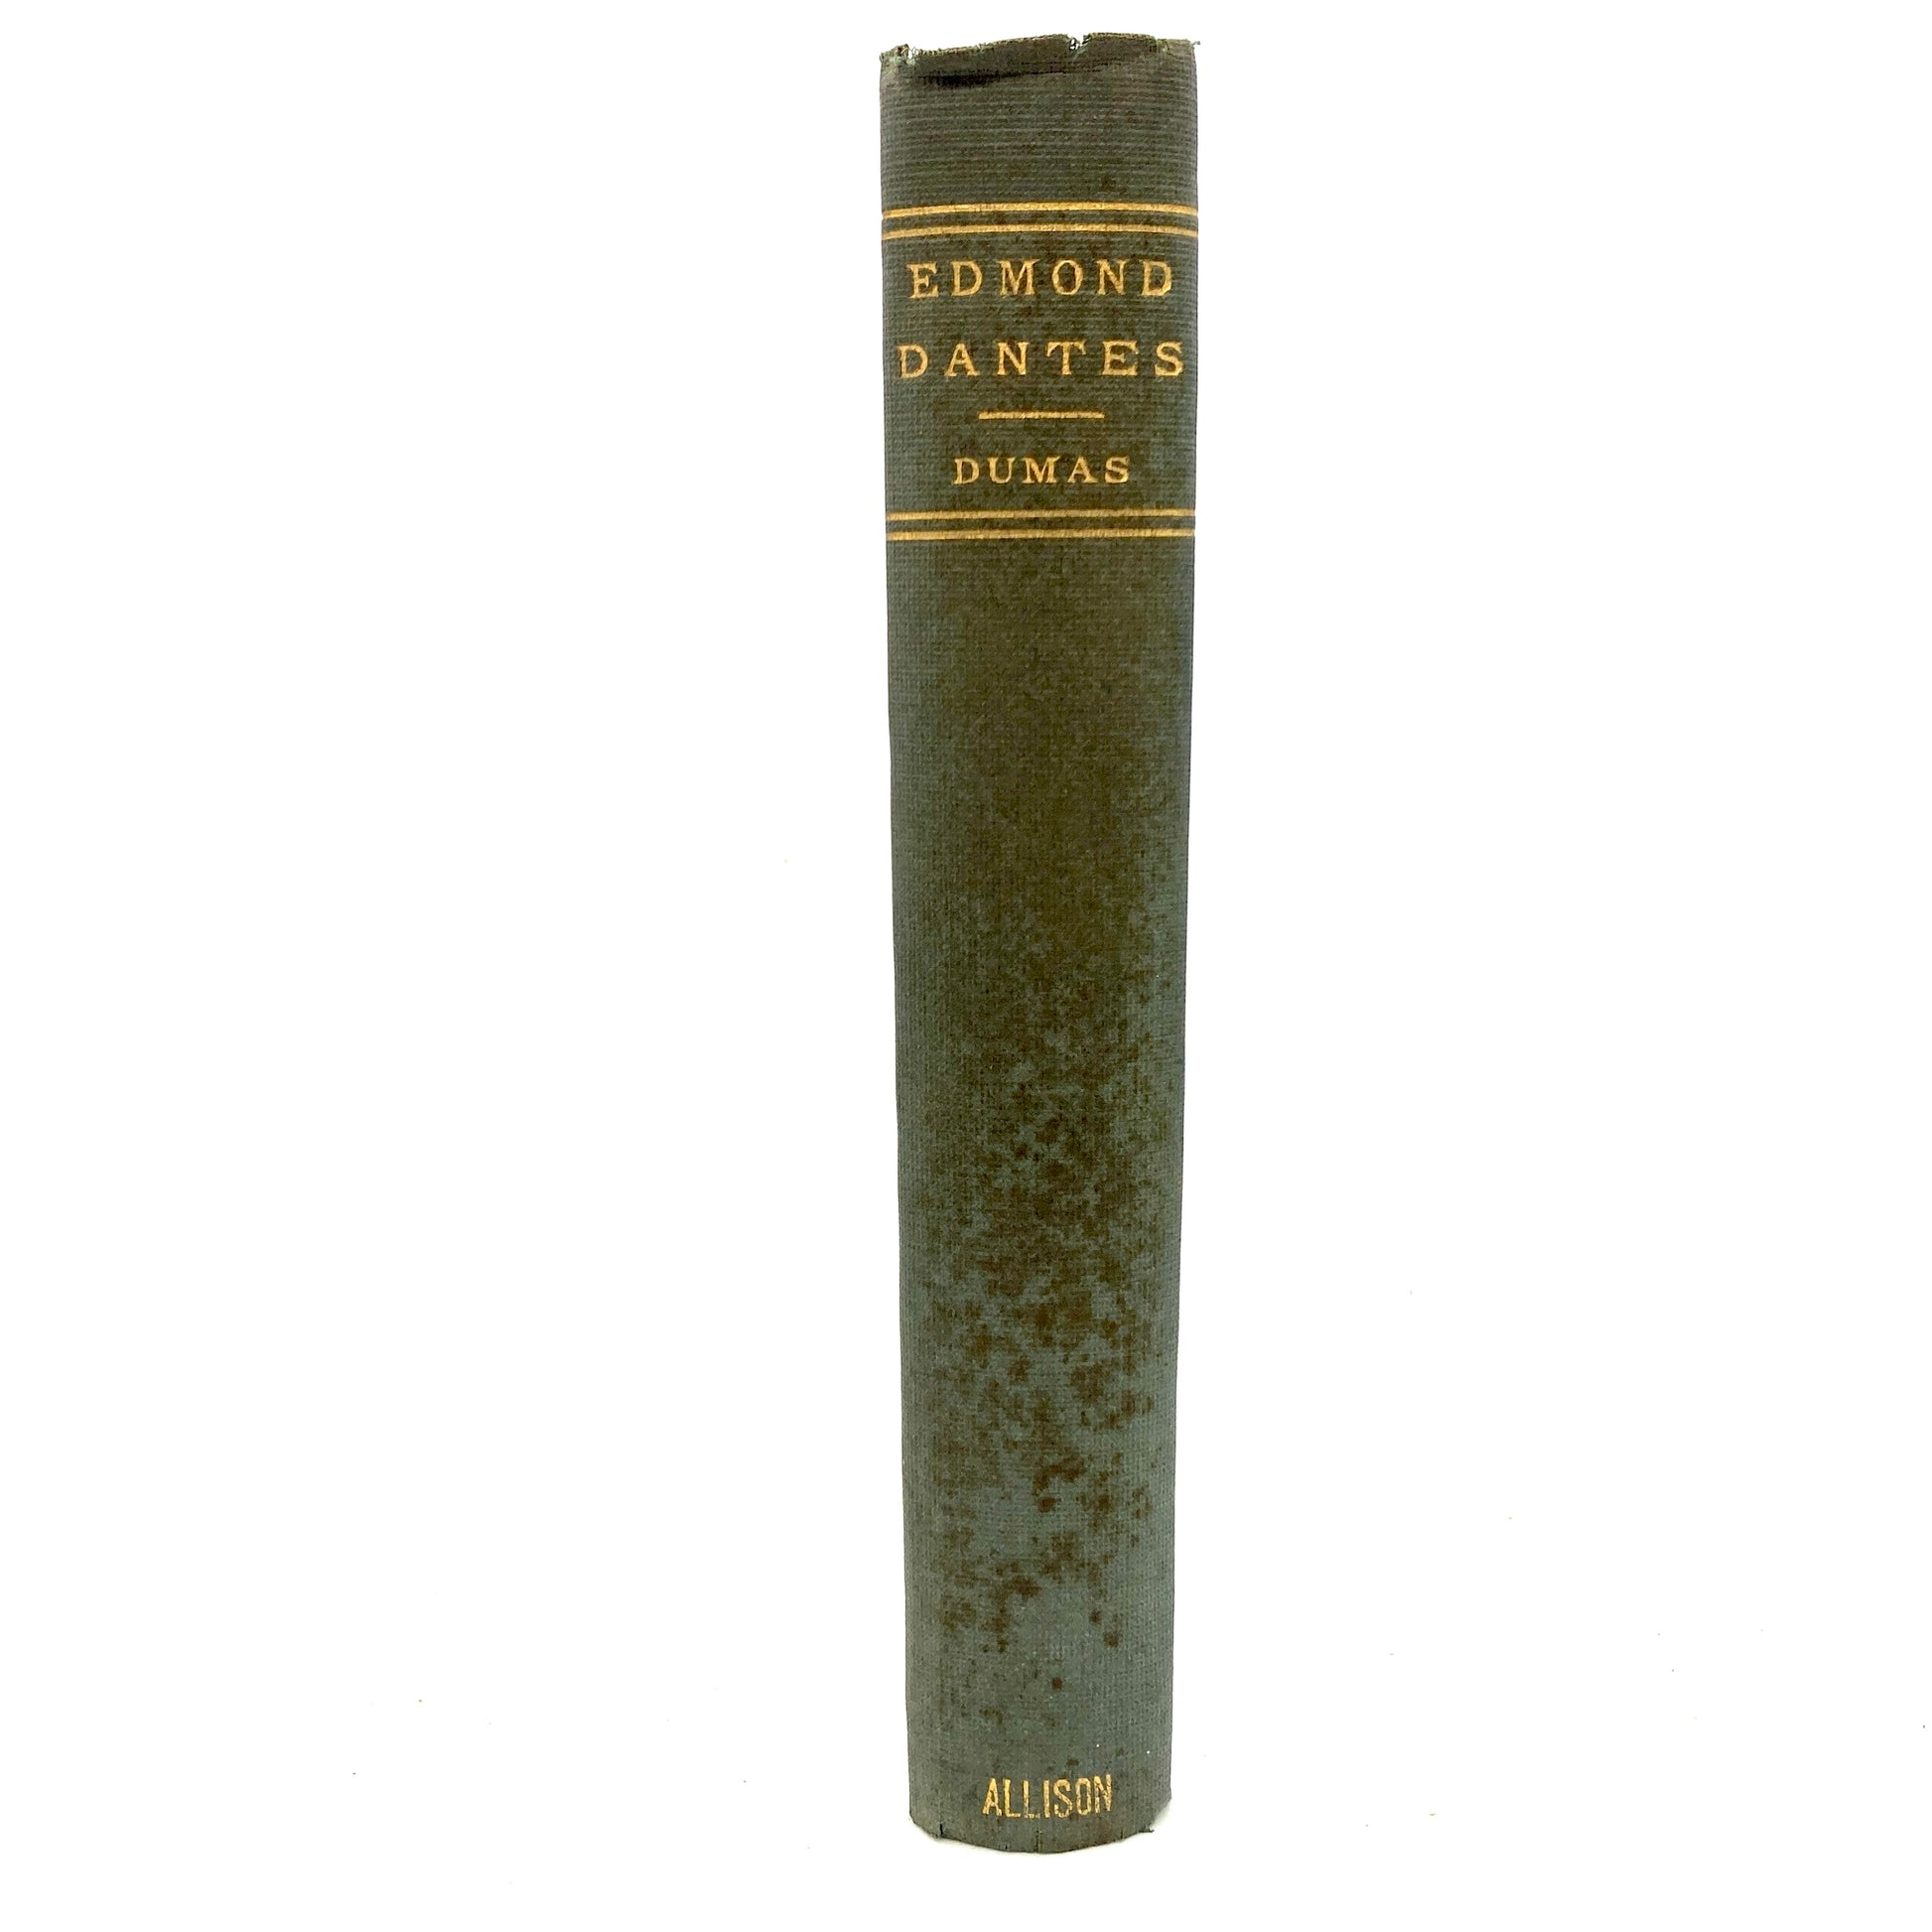 DUMAS, Alexandre "Edmond Dantes" [Wm. L. Allison, 1884] - Buzz Bookstore